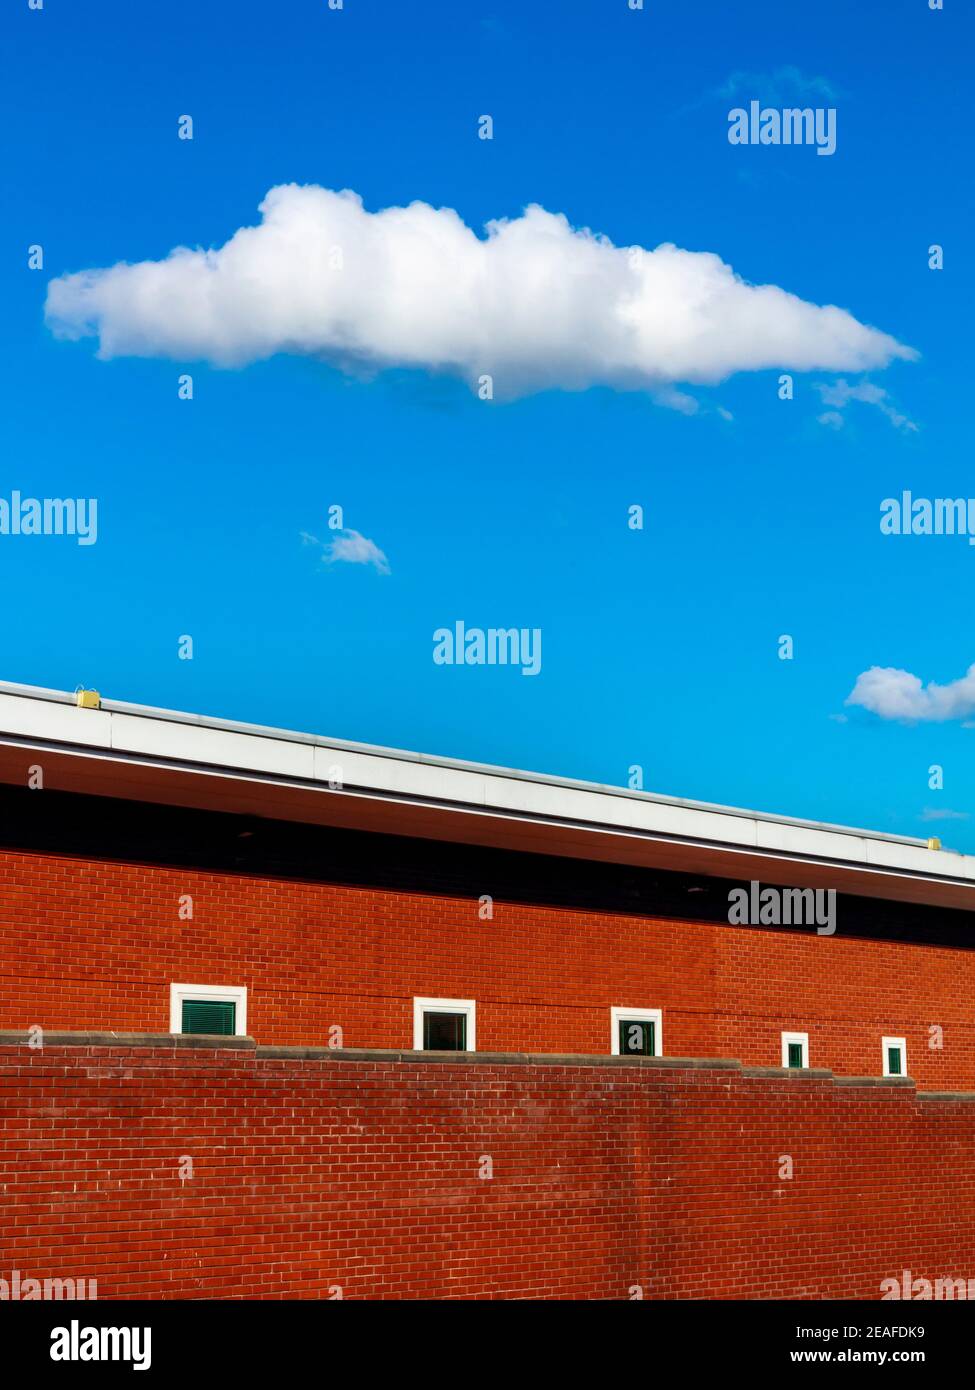 Zigarrenförmige weiße Wolke in einem blauen Himmel schwebt über einem modernen roten Backsteingebäude mit kleinen Fenstern. Stockfoto